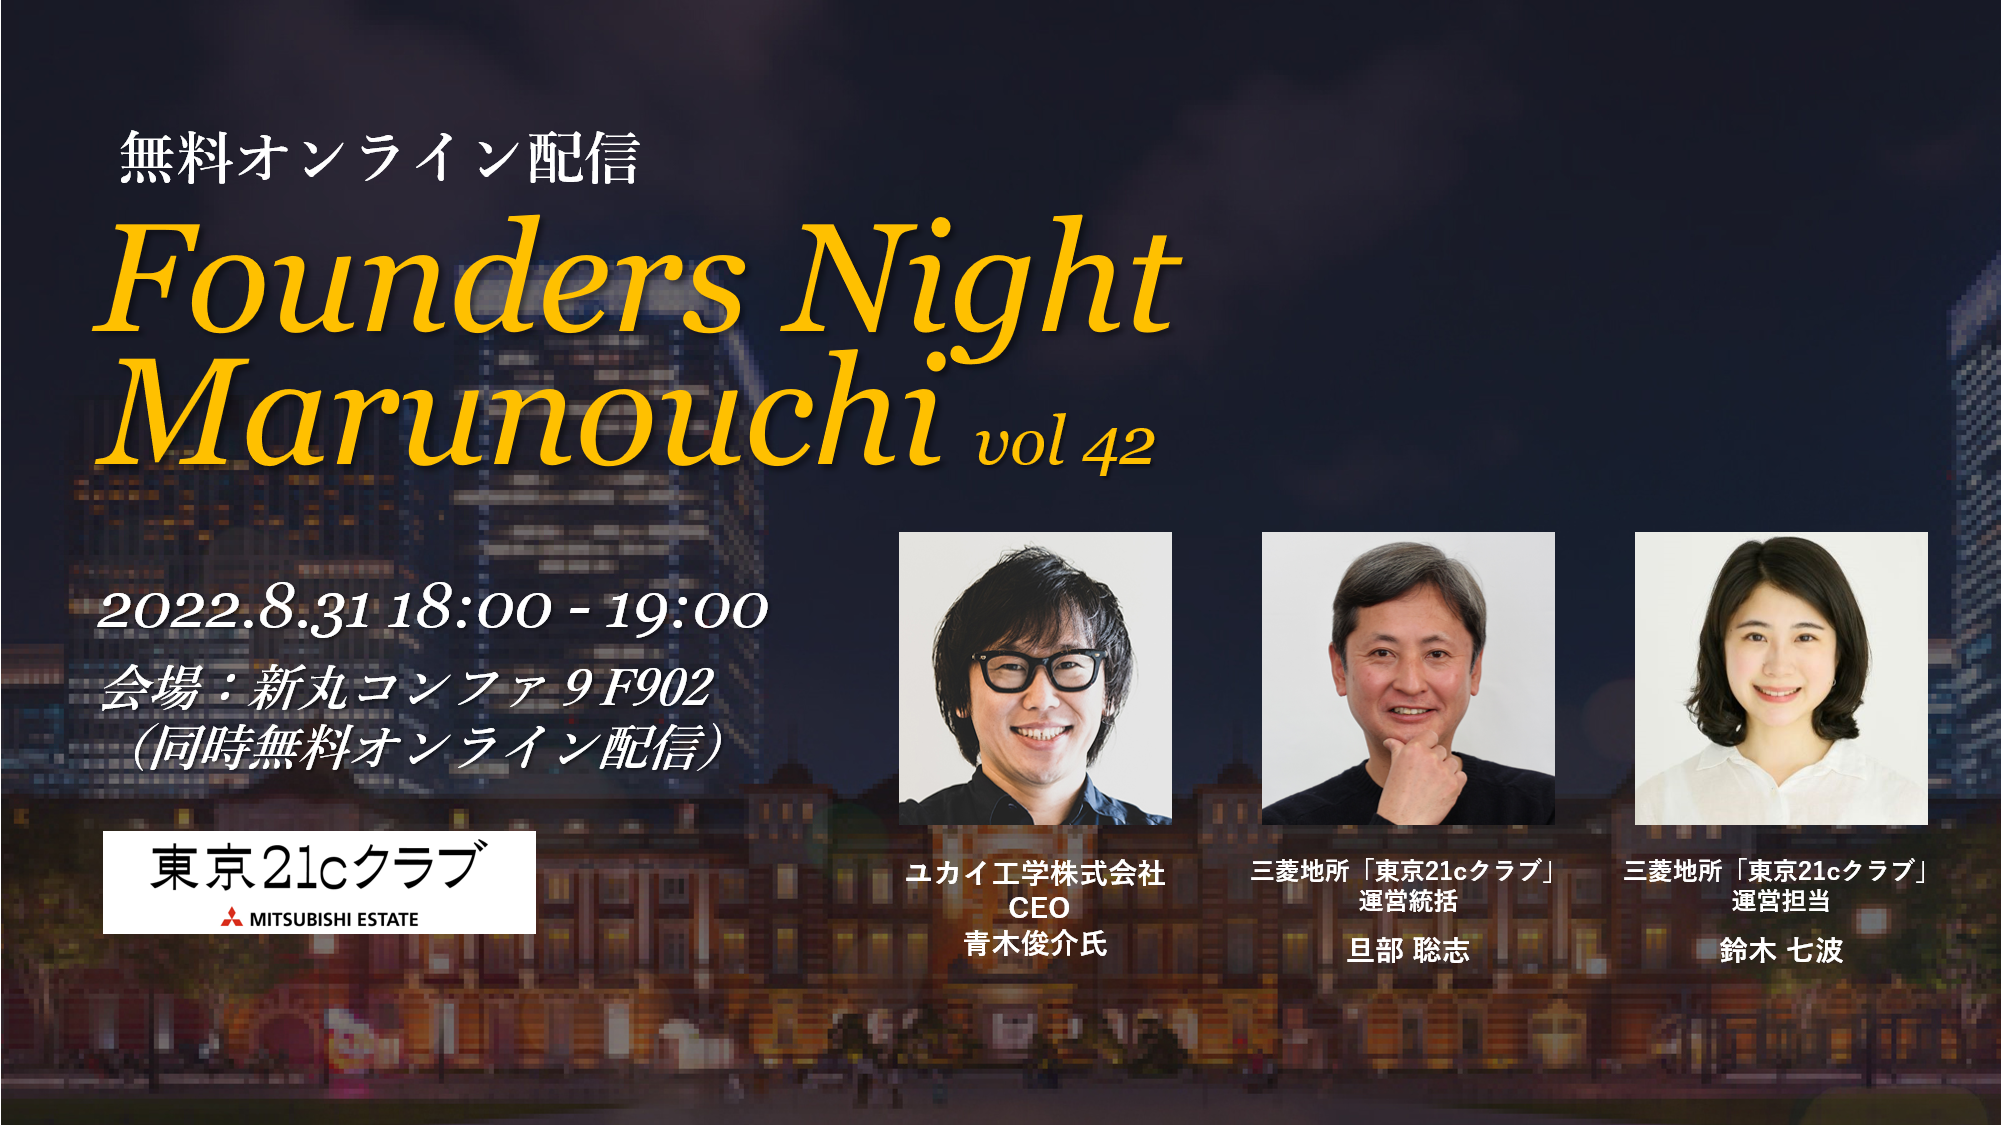 (日本語) Founders Night Marunouchi #42<br>ユカイ工学株式会社 CEO 青木俊介さん編<br>2022/8/31 会場参加・オンライン